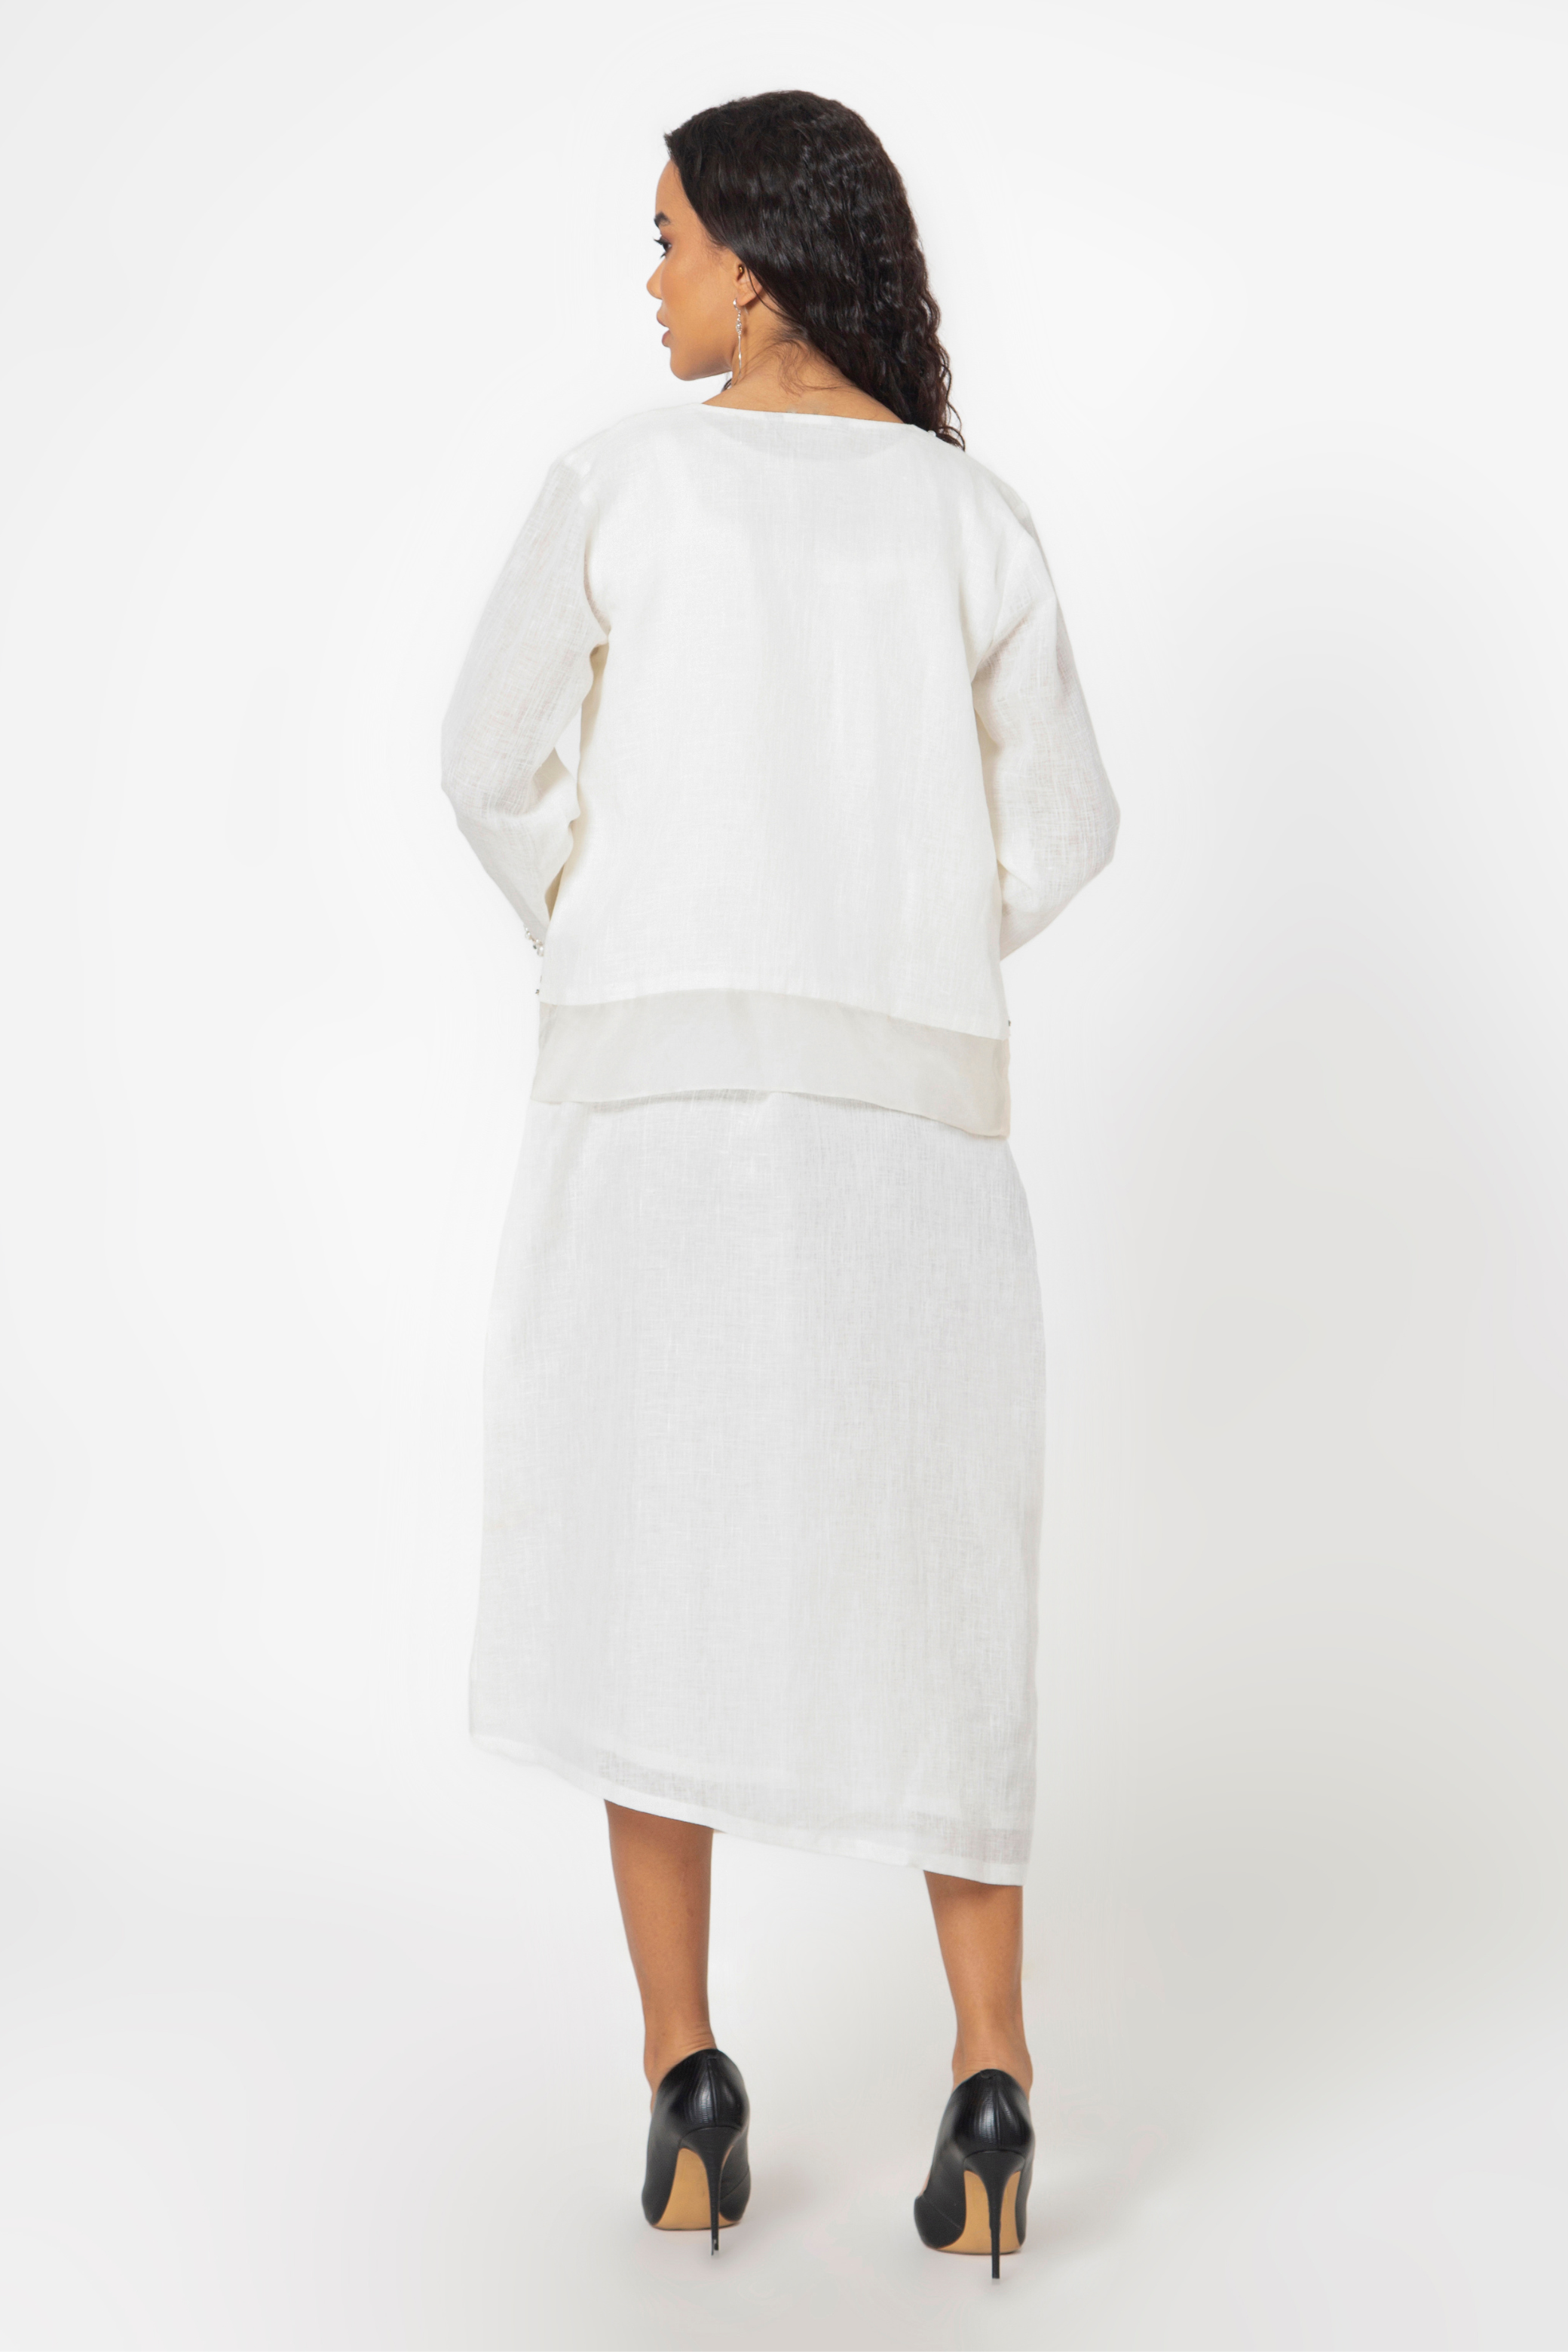 Buy White Dress Online 